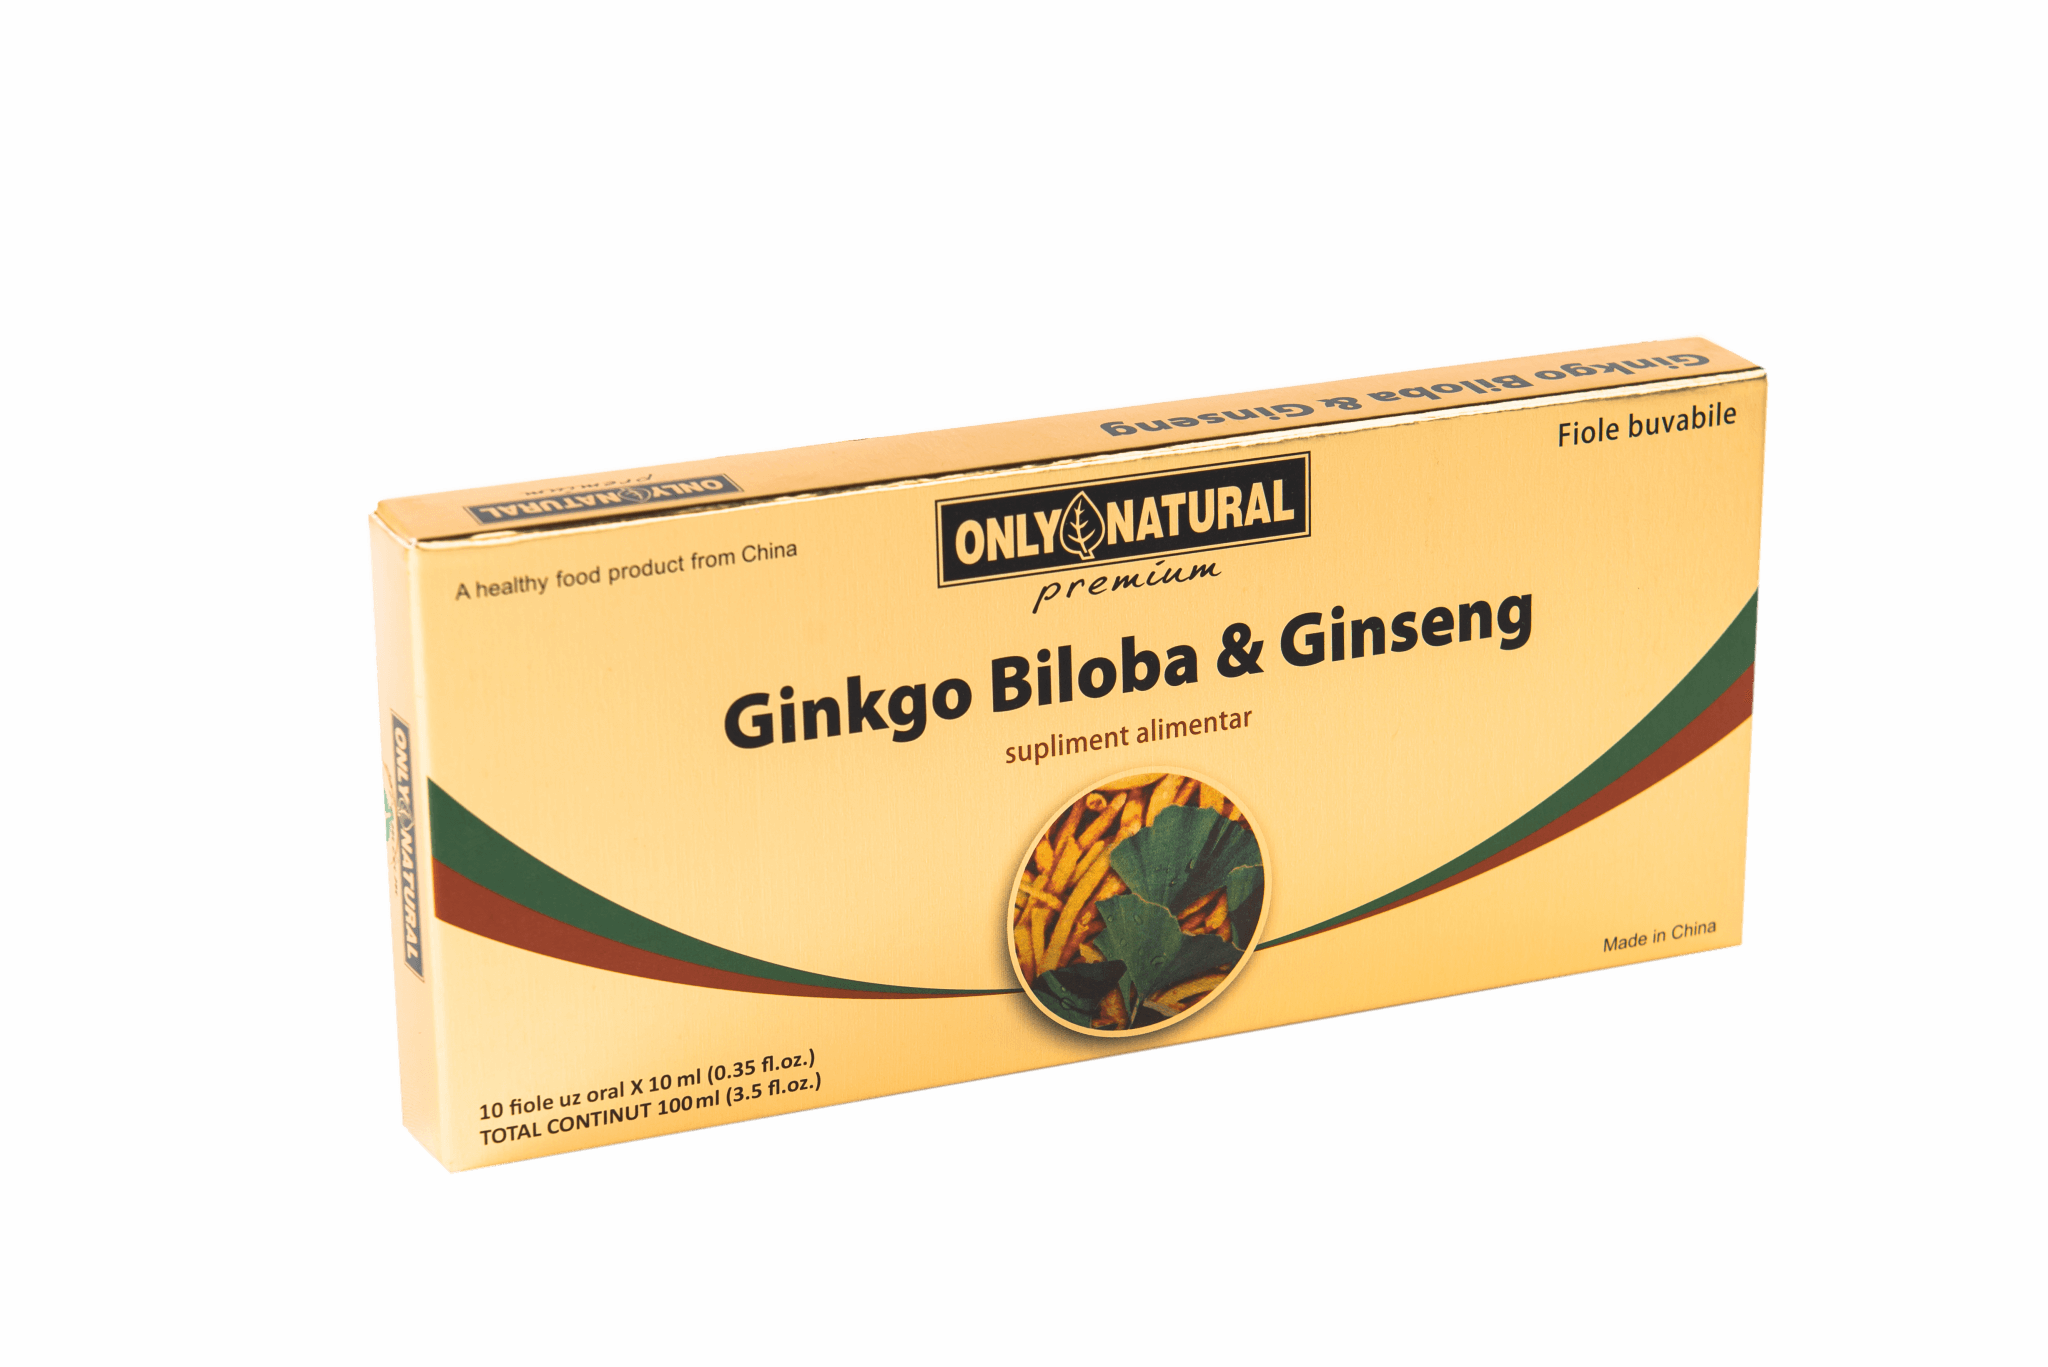 ONLY NATURAL GINKGO BILOBA + GINSENG 10 FIOLE X 10ML Helpnet.ro